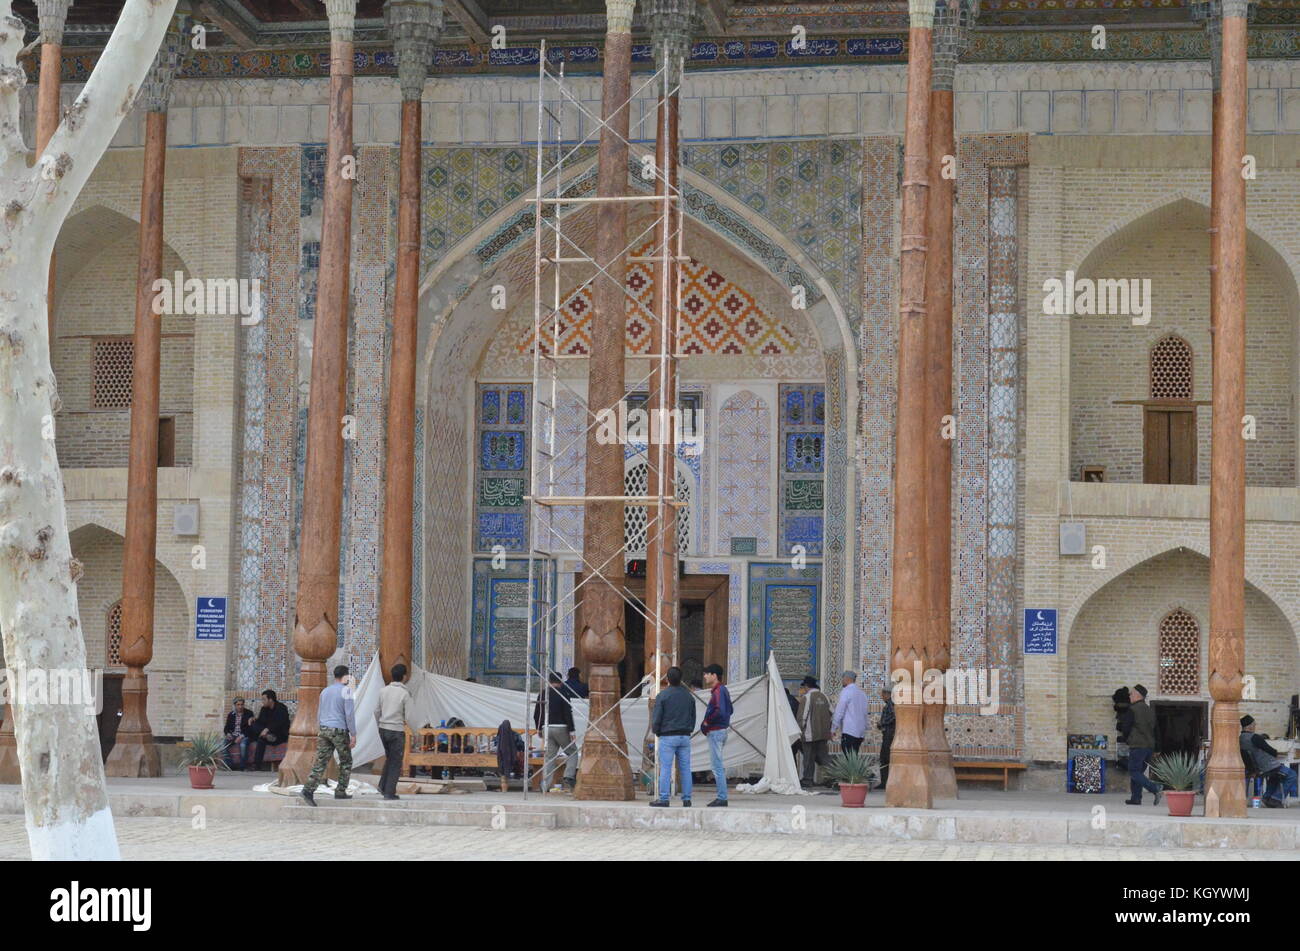 Mezquita de Bolo Hauz con patrón geométrico mosaico iwan y pilares de madera tallada, delgado, como troncos de árboles en Bujará, Uzbekistán. Foto de stock